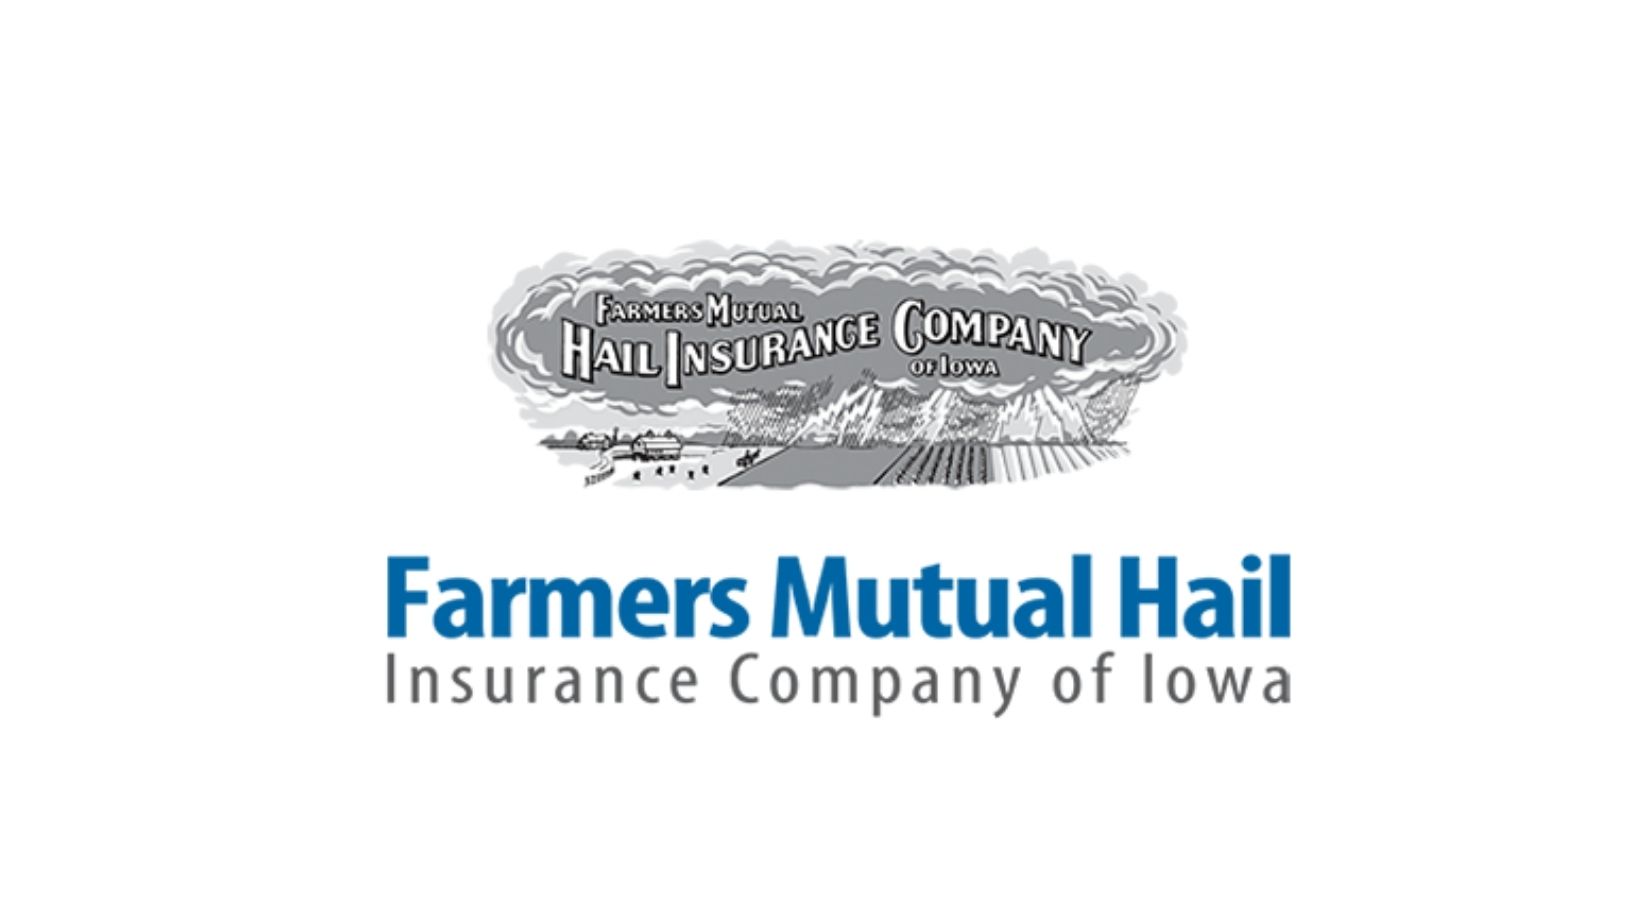 Farmers mutual hail logo